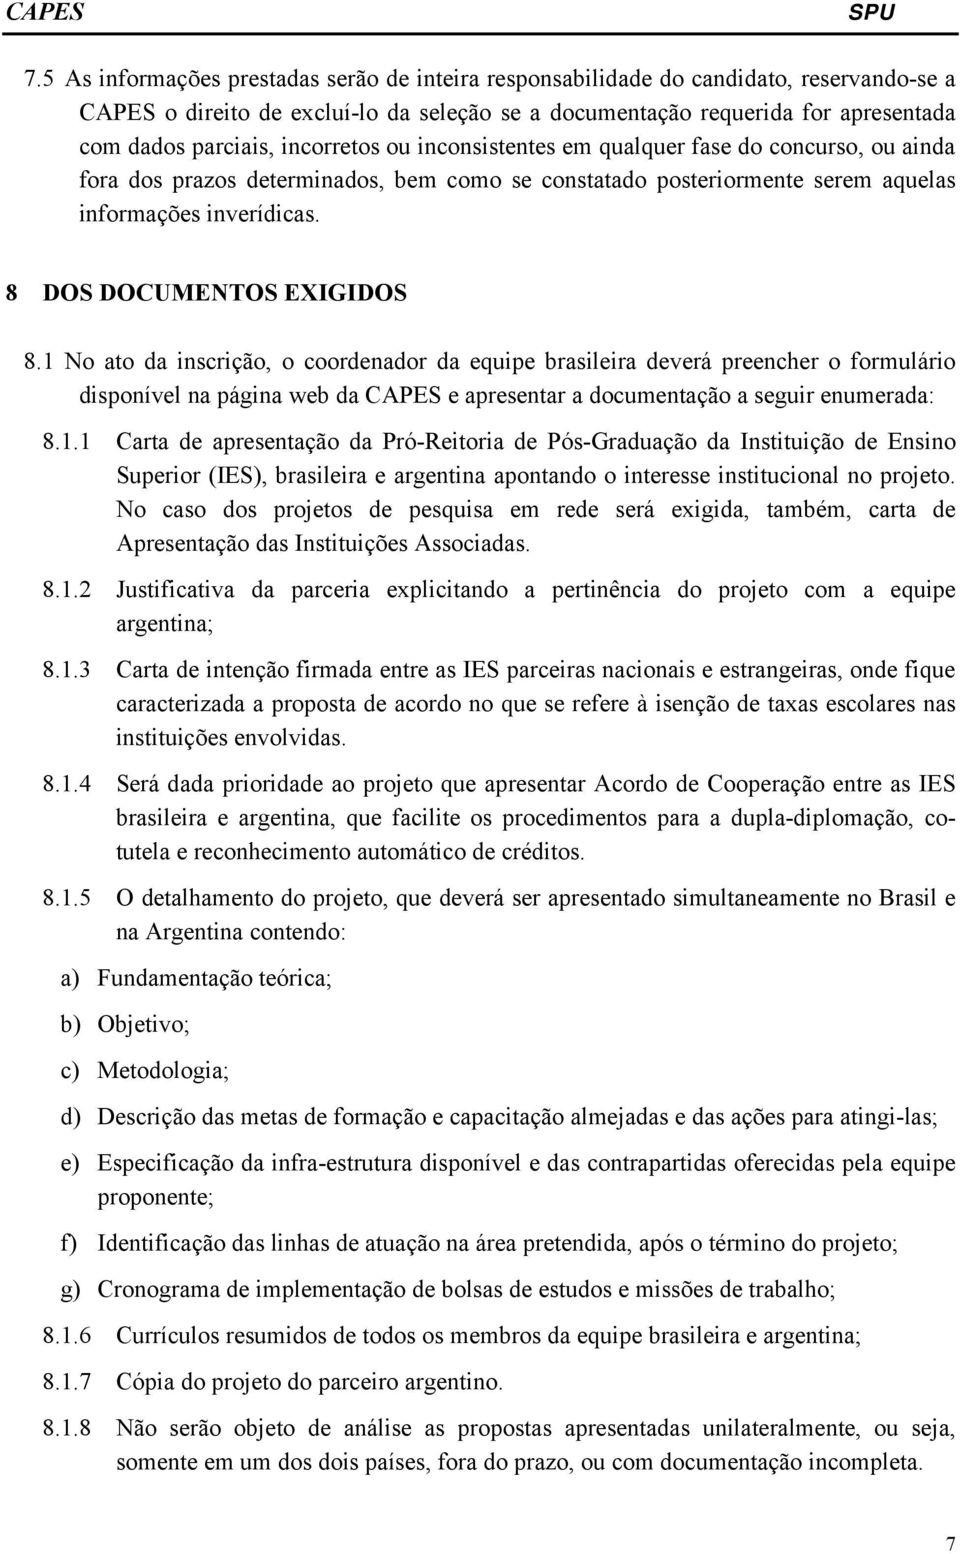 8 DOS DOCUMENTOS EXIGIDOS 8.1 No ato da inscrição, o coordenador da equipe brasileira deverá preencher o formulário disponível na página web da CAPES e apresentar a documentação a seguir enumerada: 8.